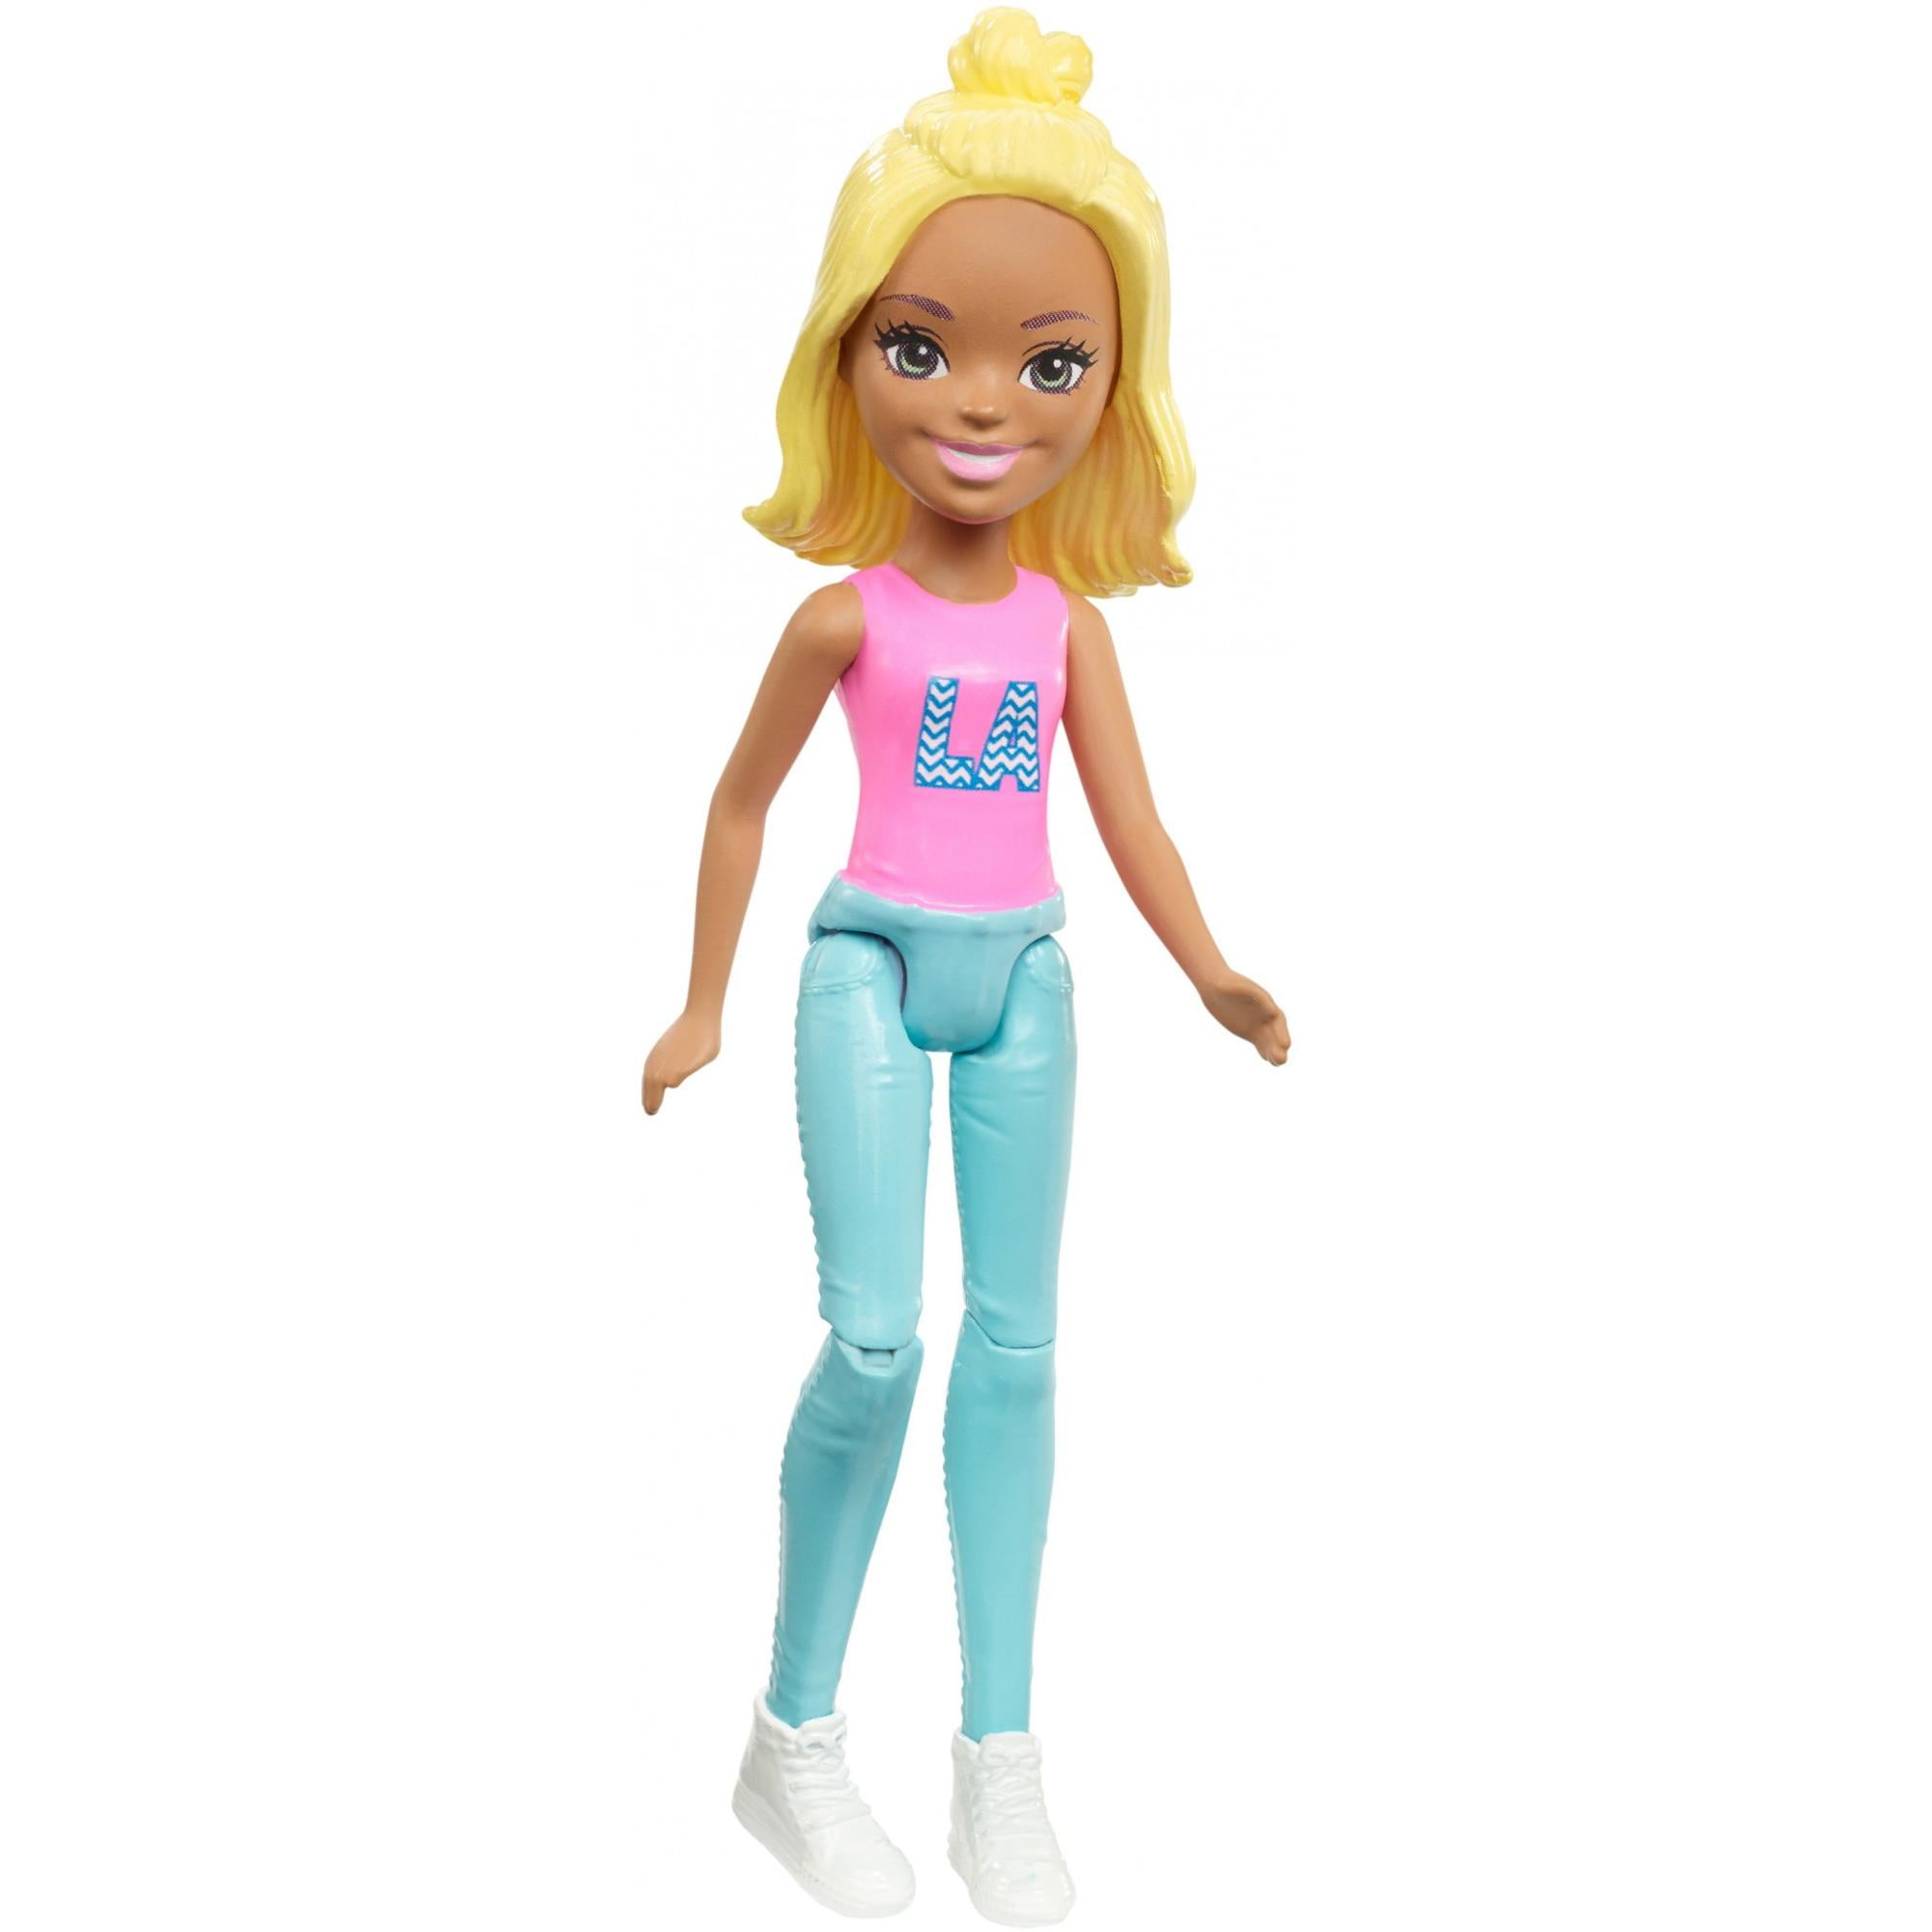 Мини куклы барби. Fhv55 мини-кукла Барби. Мини-кукла Барби в движении 11 см Mattel fhv55. Кукла Барби 11 см Barbie on the go. Кукла Barbie fhv55.